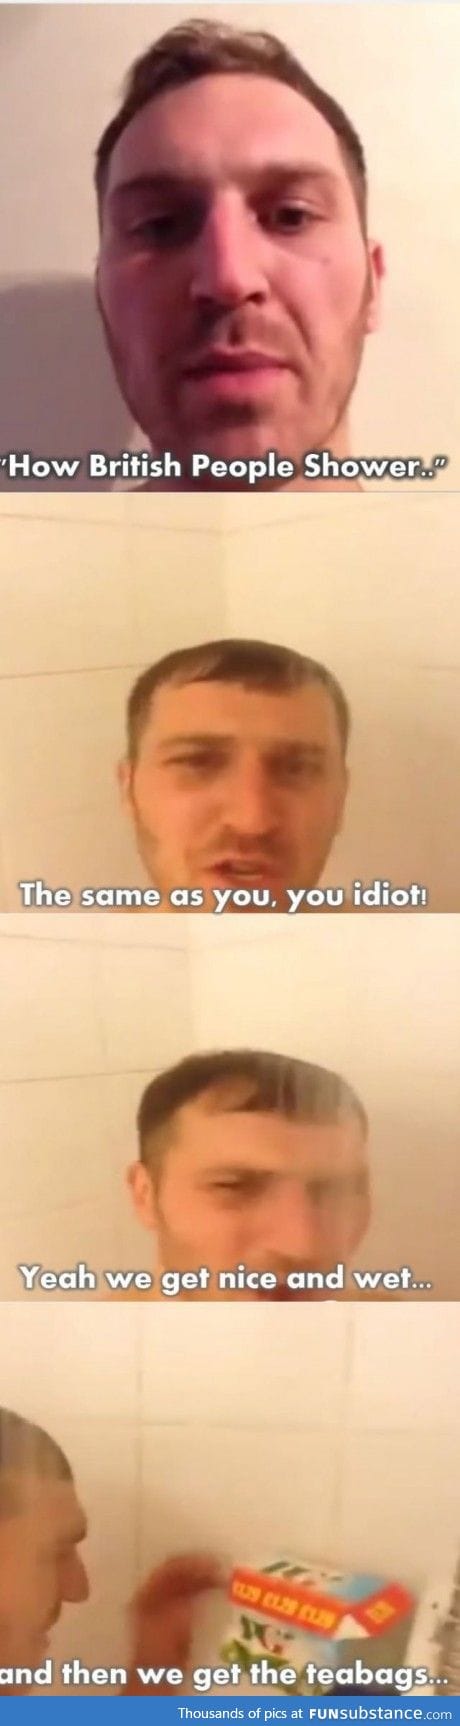 How British shower